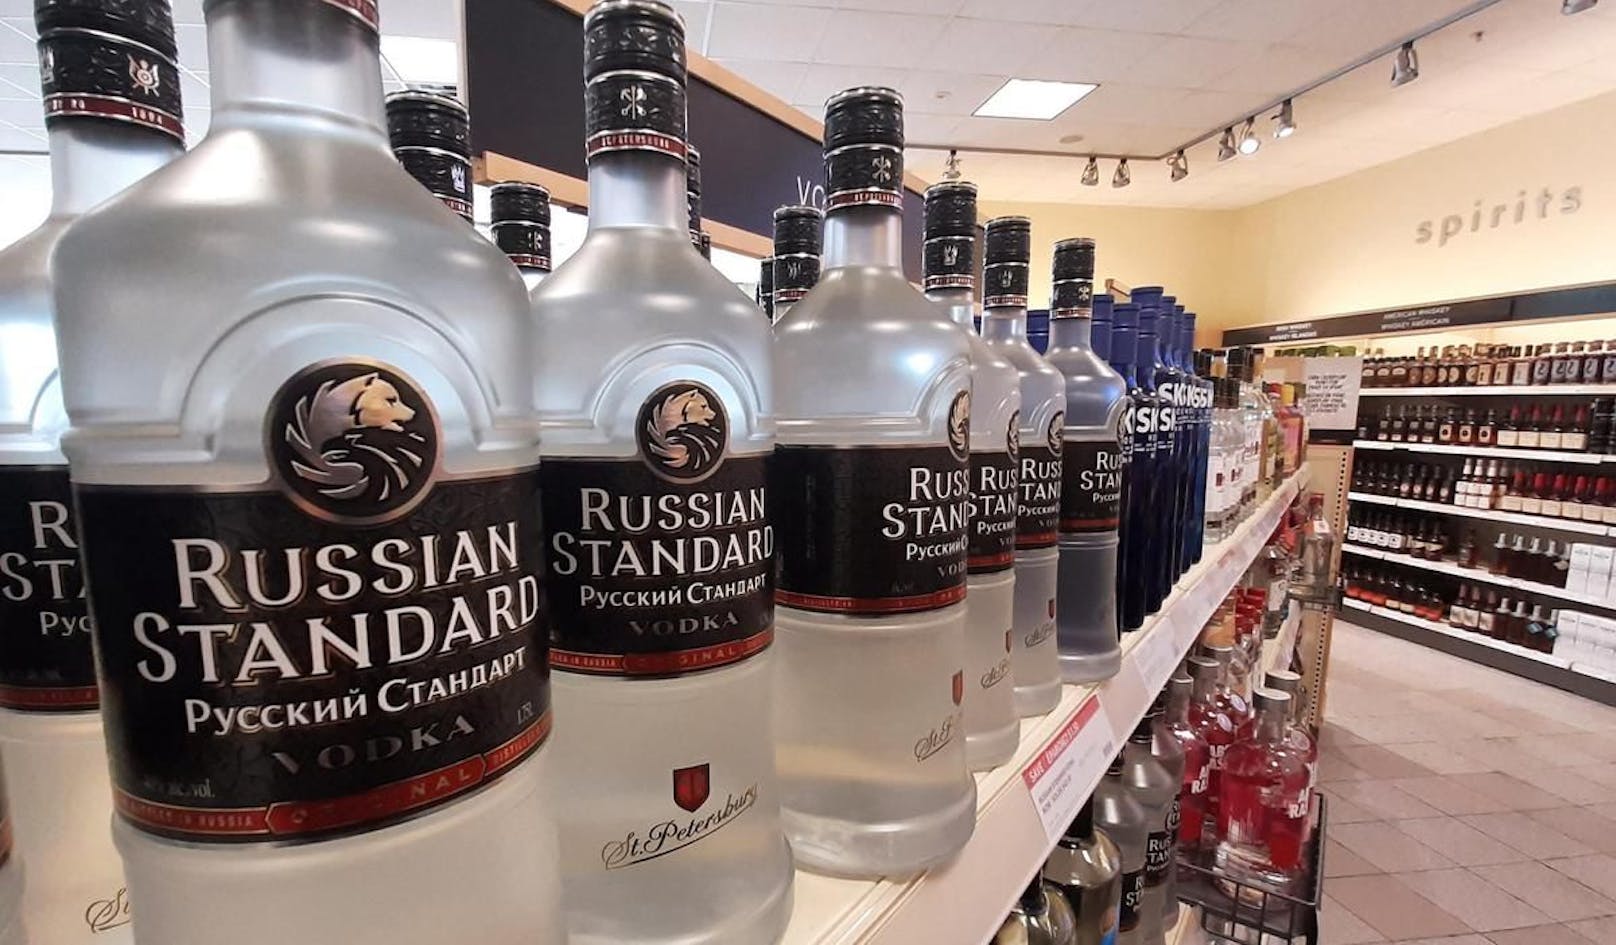 Geschäfte und Bars in den USA entfernen russische Produkte, unter anderem Wodka, aus ihrem Sortiment.